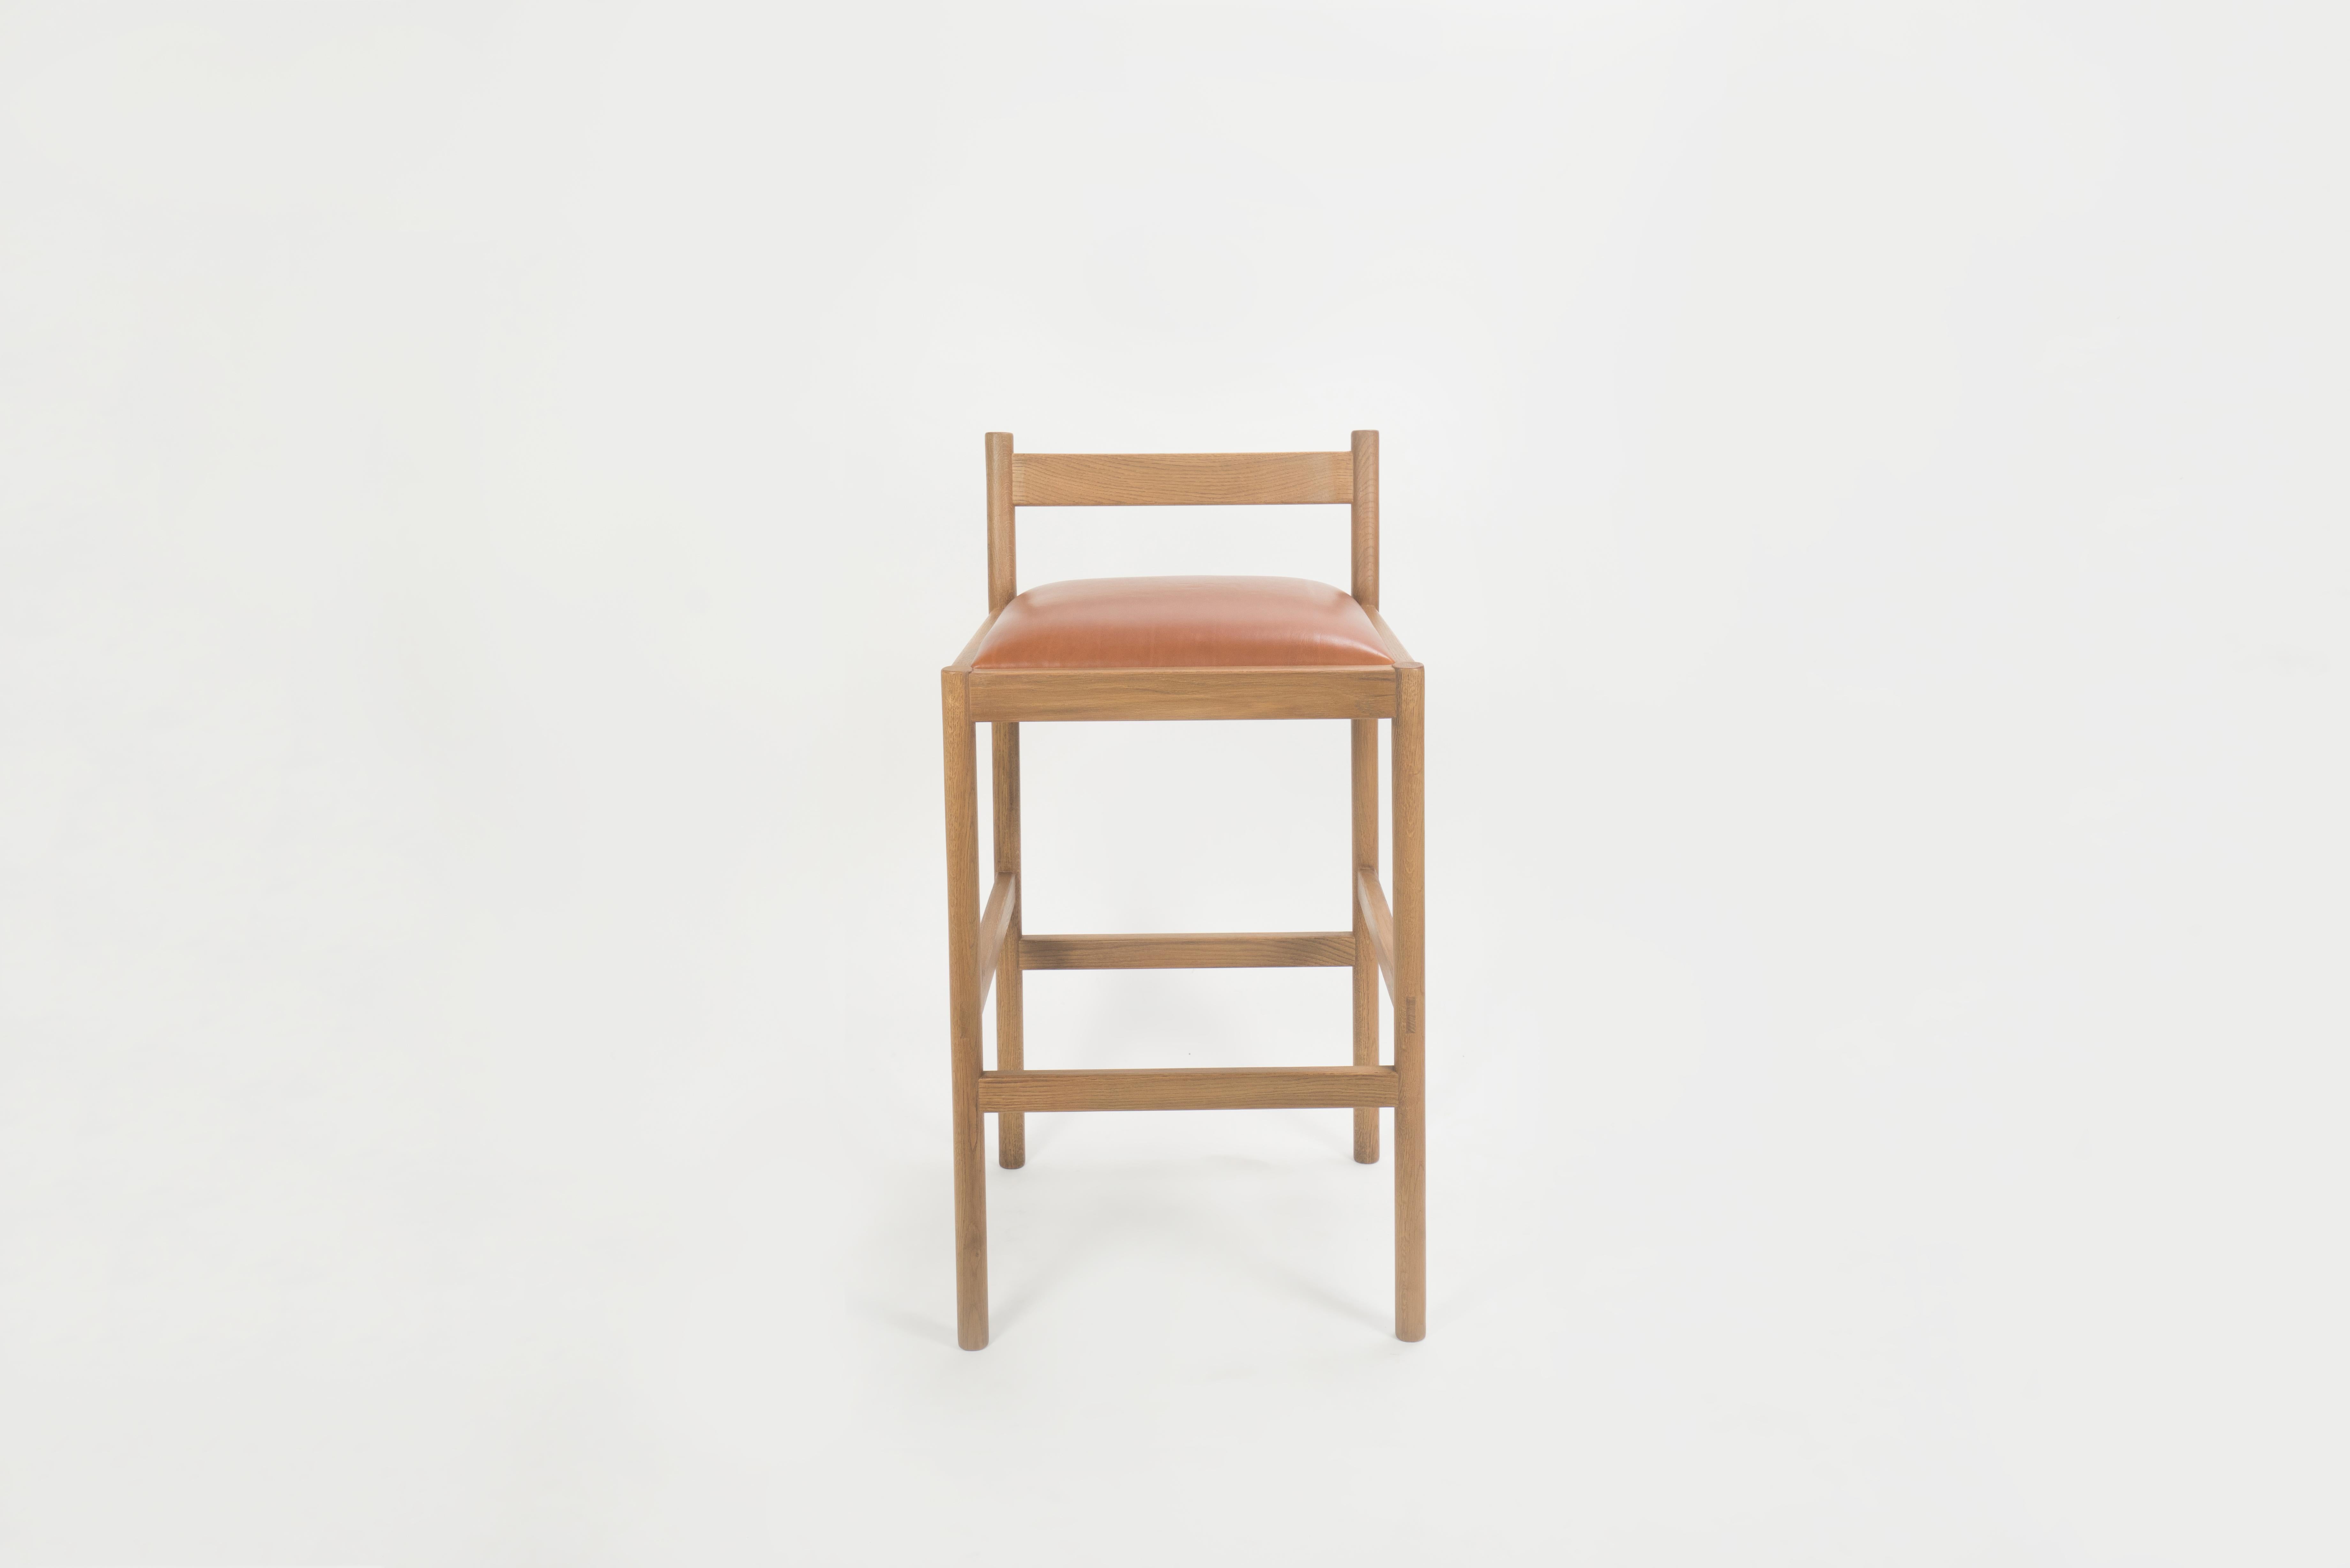 Sun at six ist ein Studio für zeitgenössisches Möbeldesign, das mit traditionellen chinesischen Tischlermeistern zusammenarbeitet, um unsere Stücke in Handarbeit zu fertigen. Dieser minimalistische Thekenhocker verbindet klare Linien mit